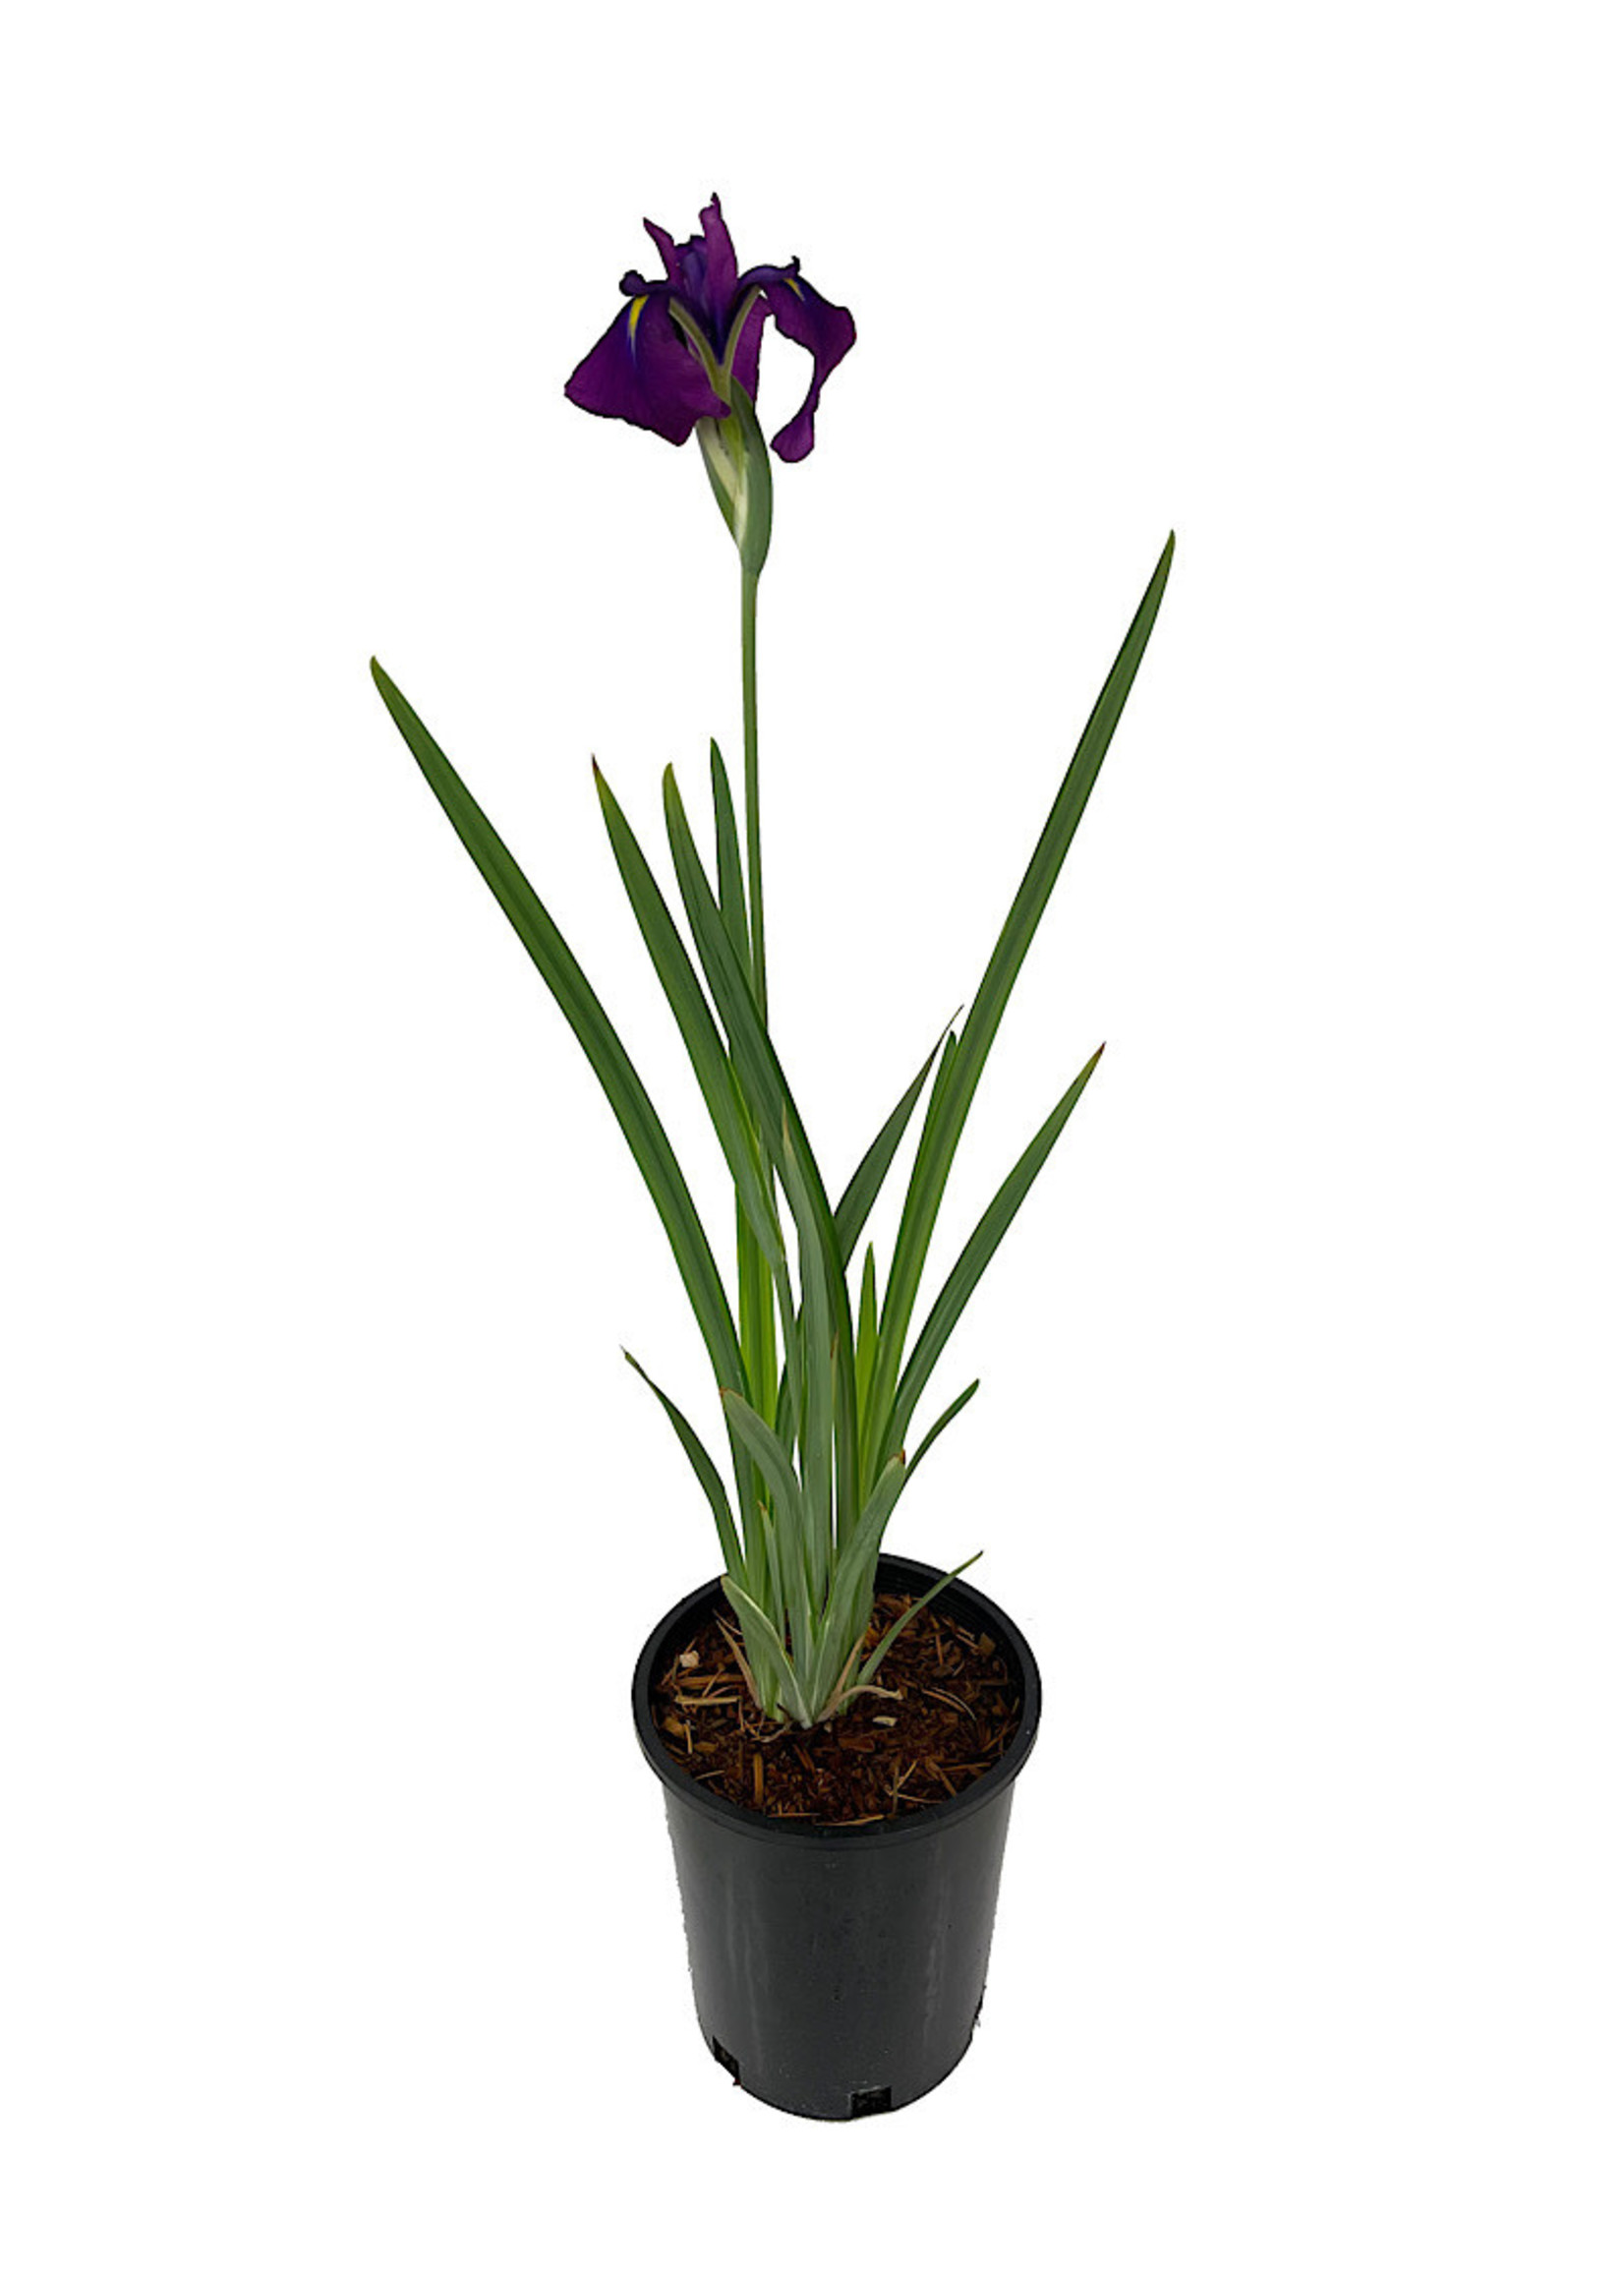 Iris ensata 'Variegata' 1 Gallon